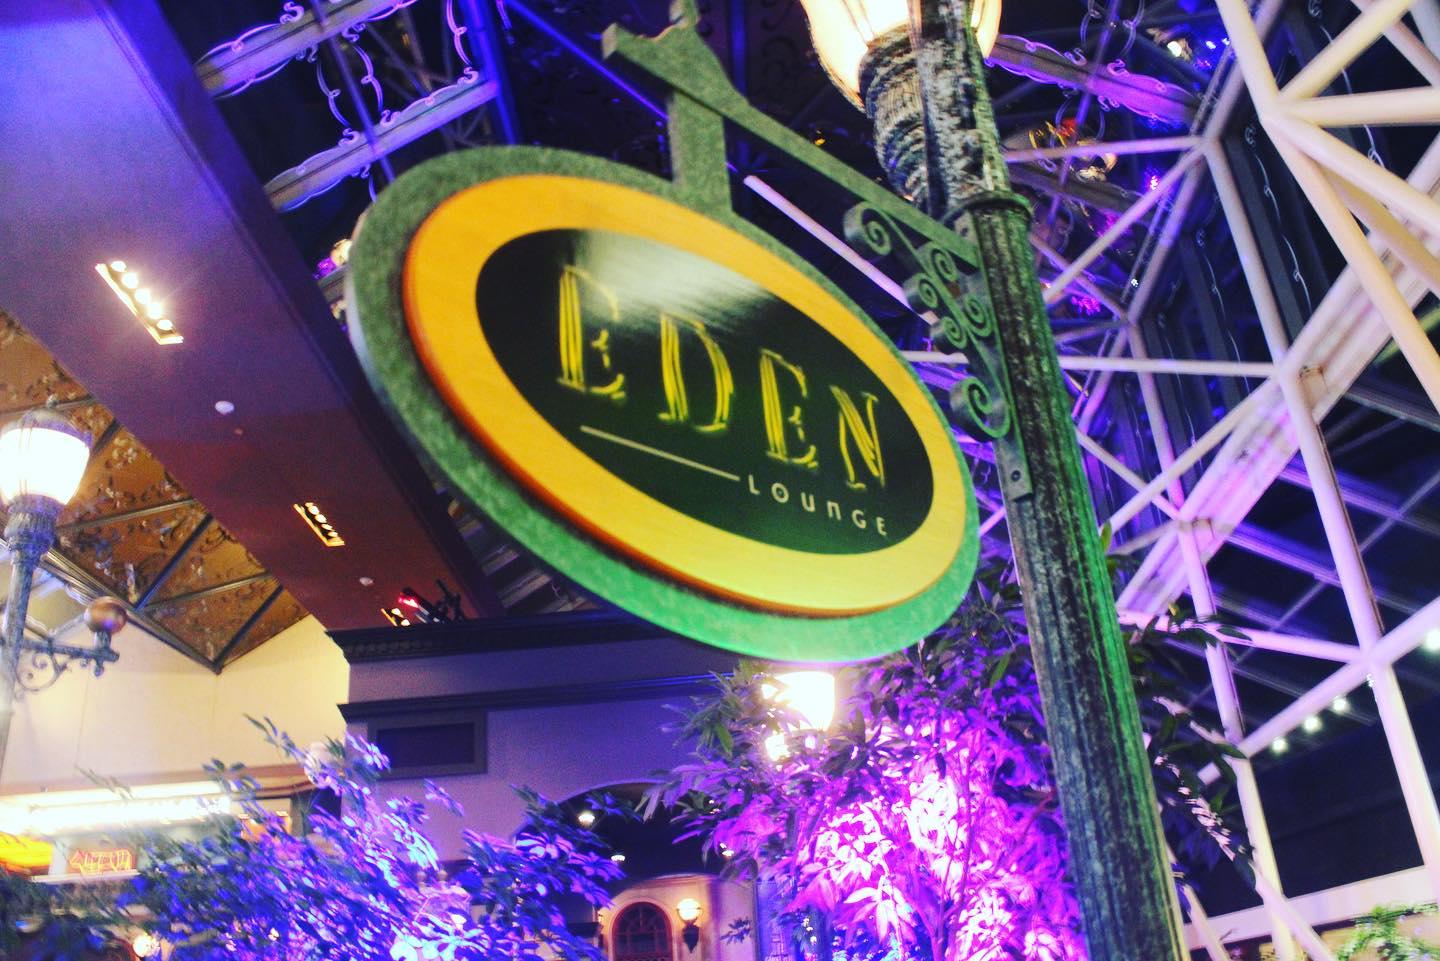 Eden Lounge